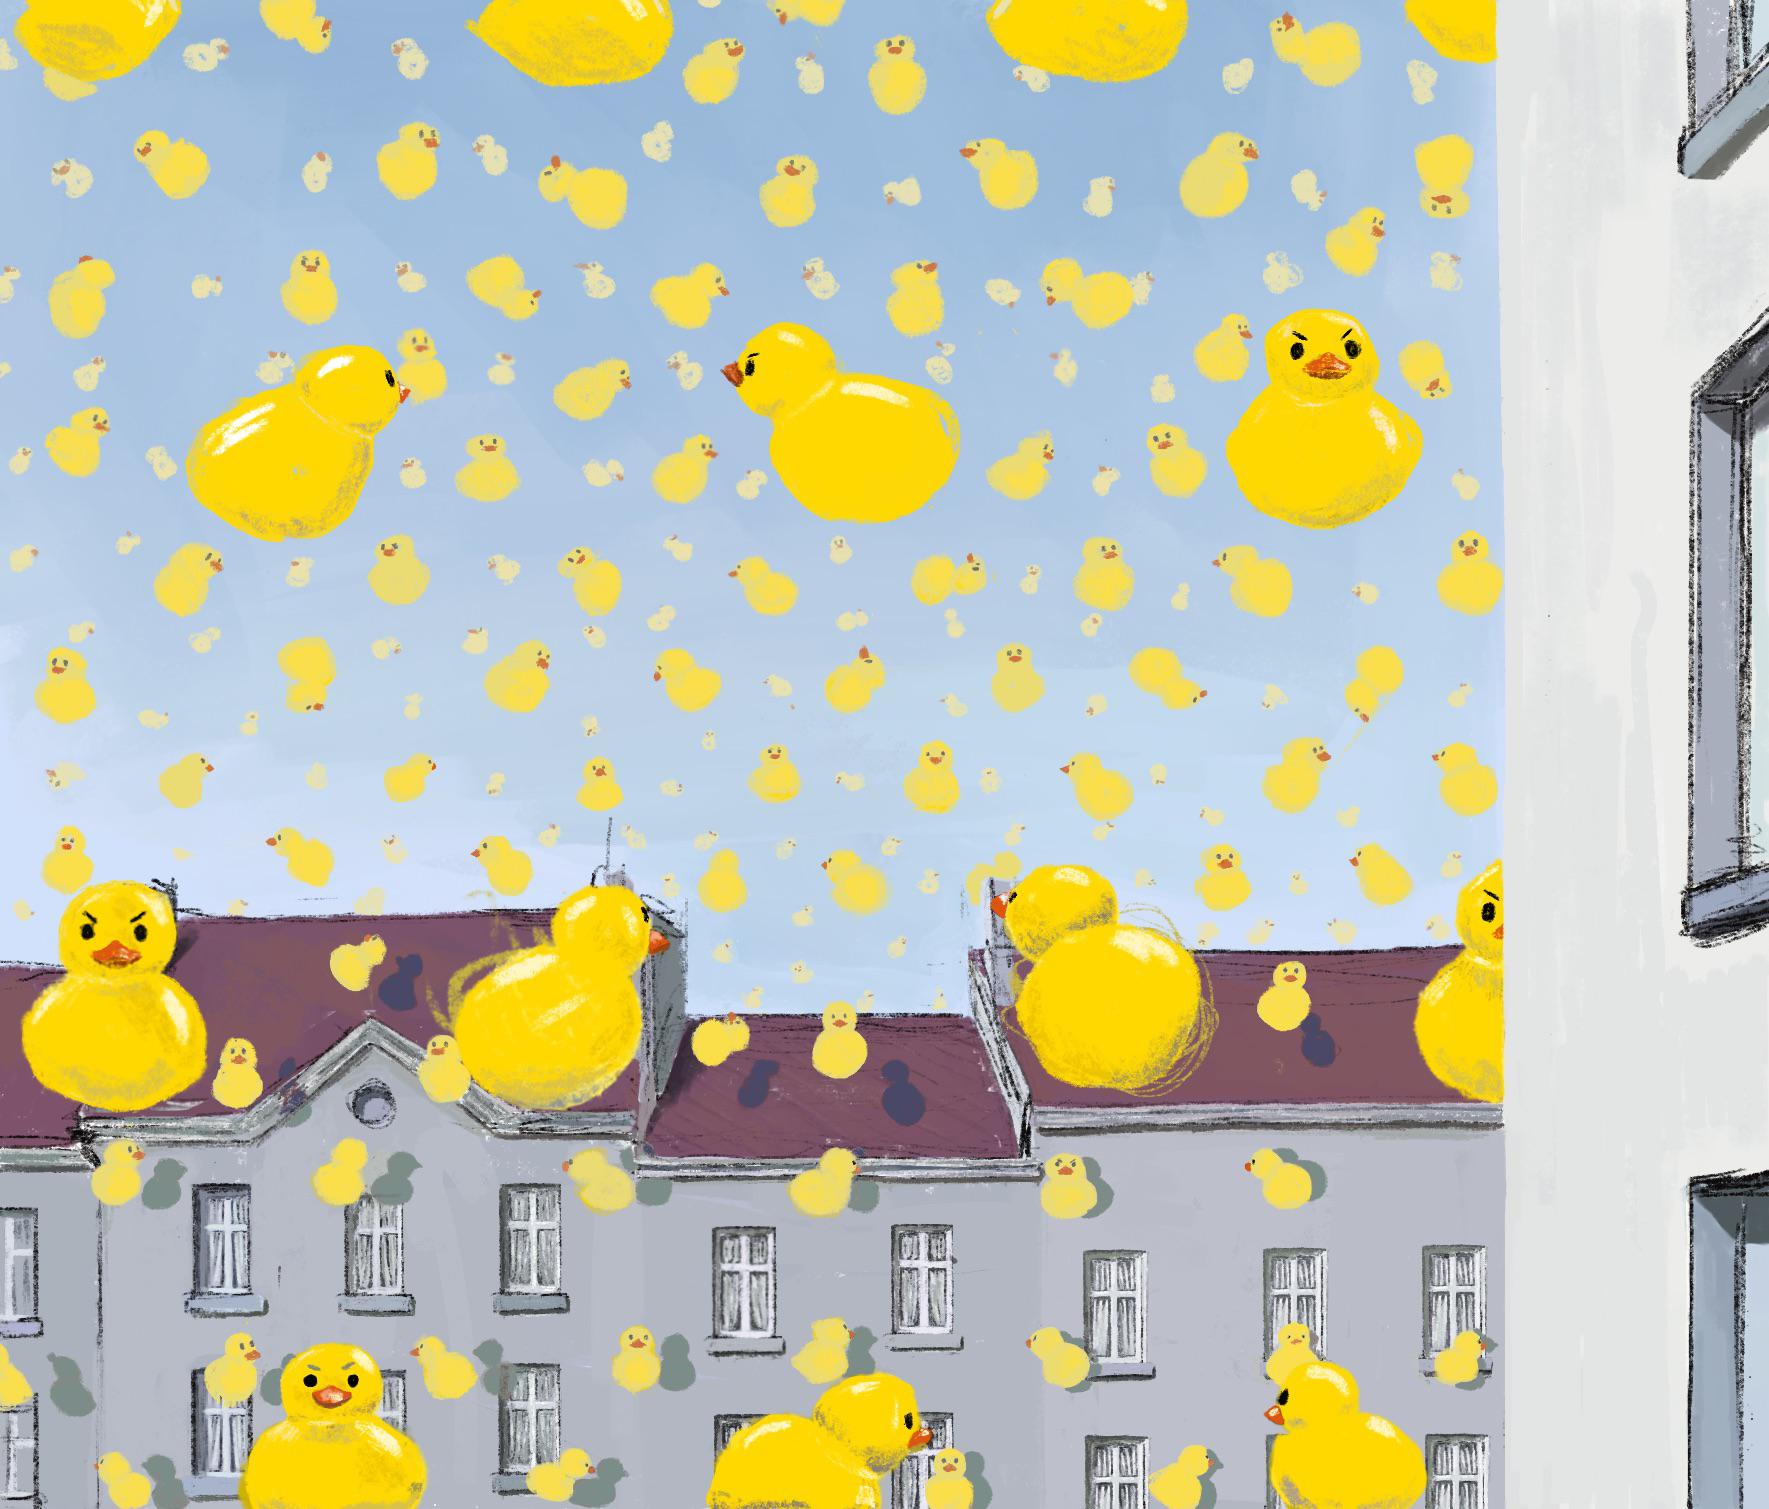 It's raining ducks by Maksim